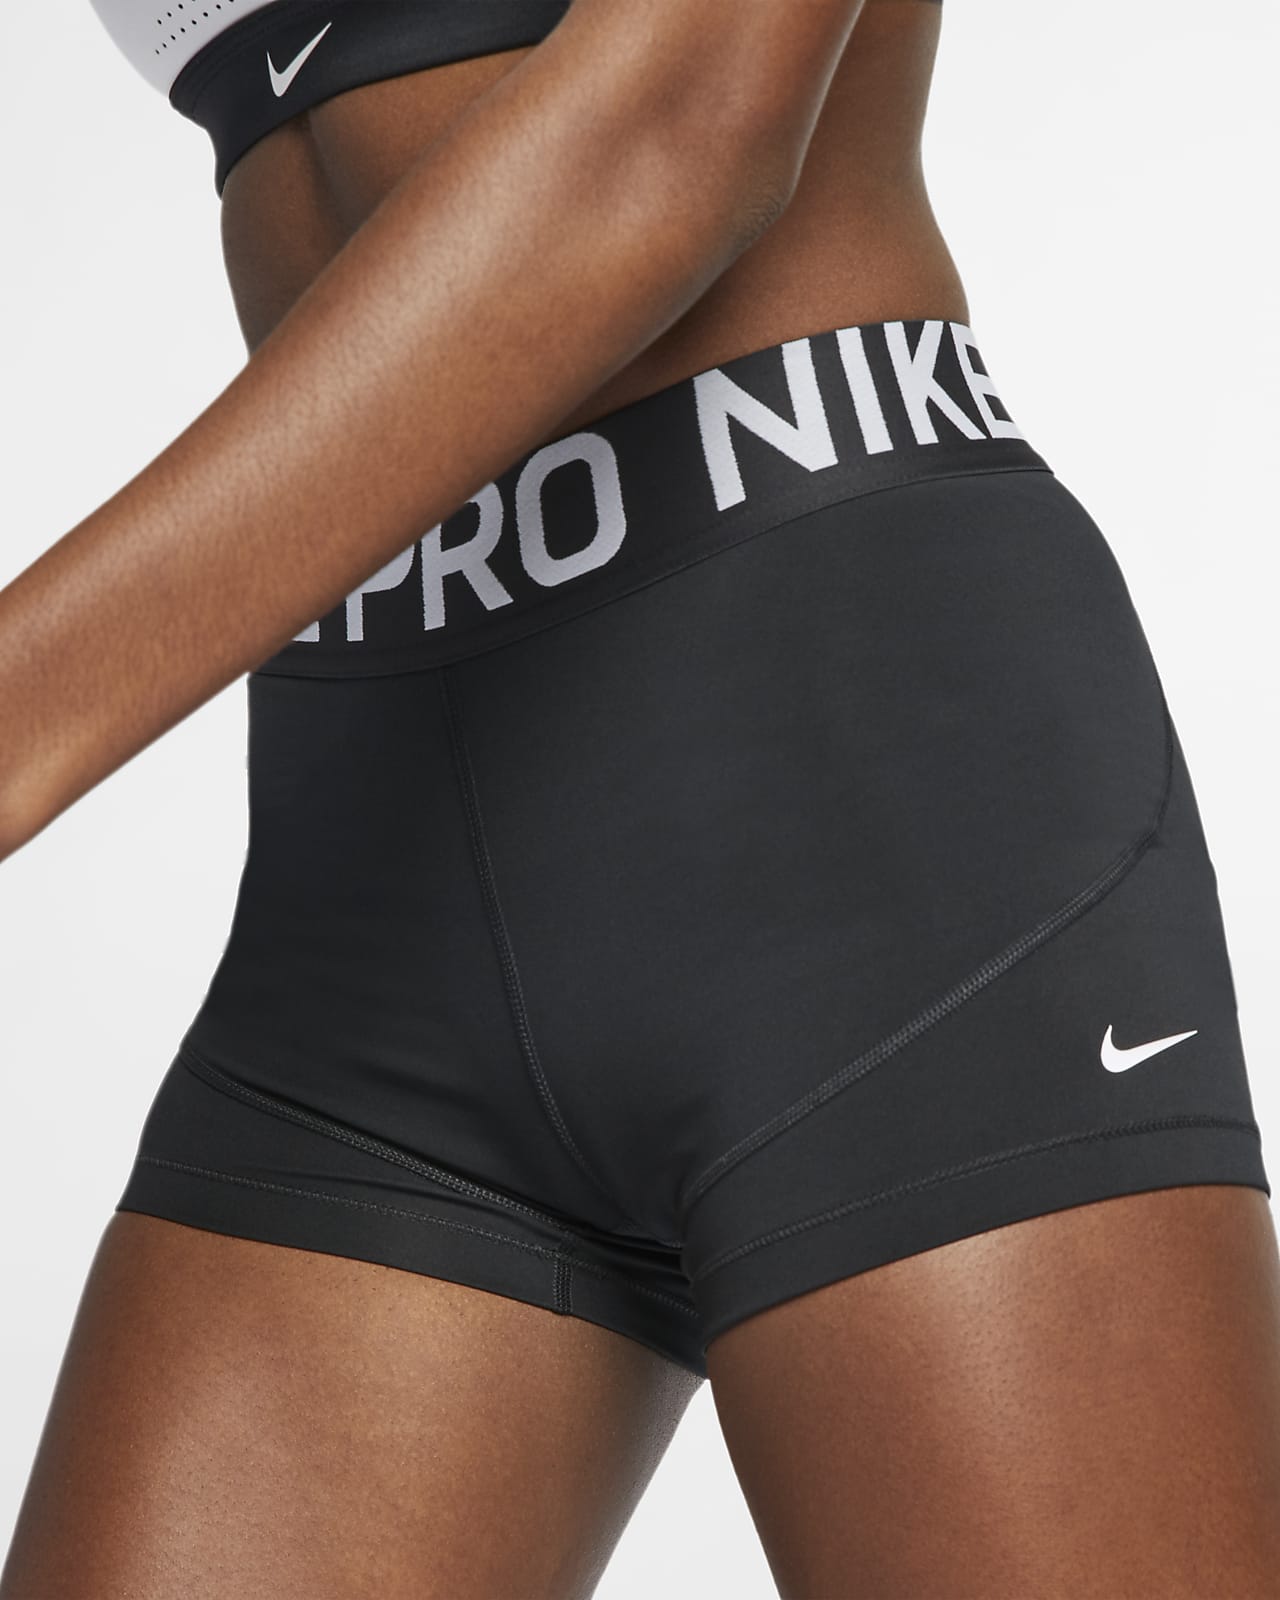 nike pro shorts women canada